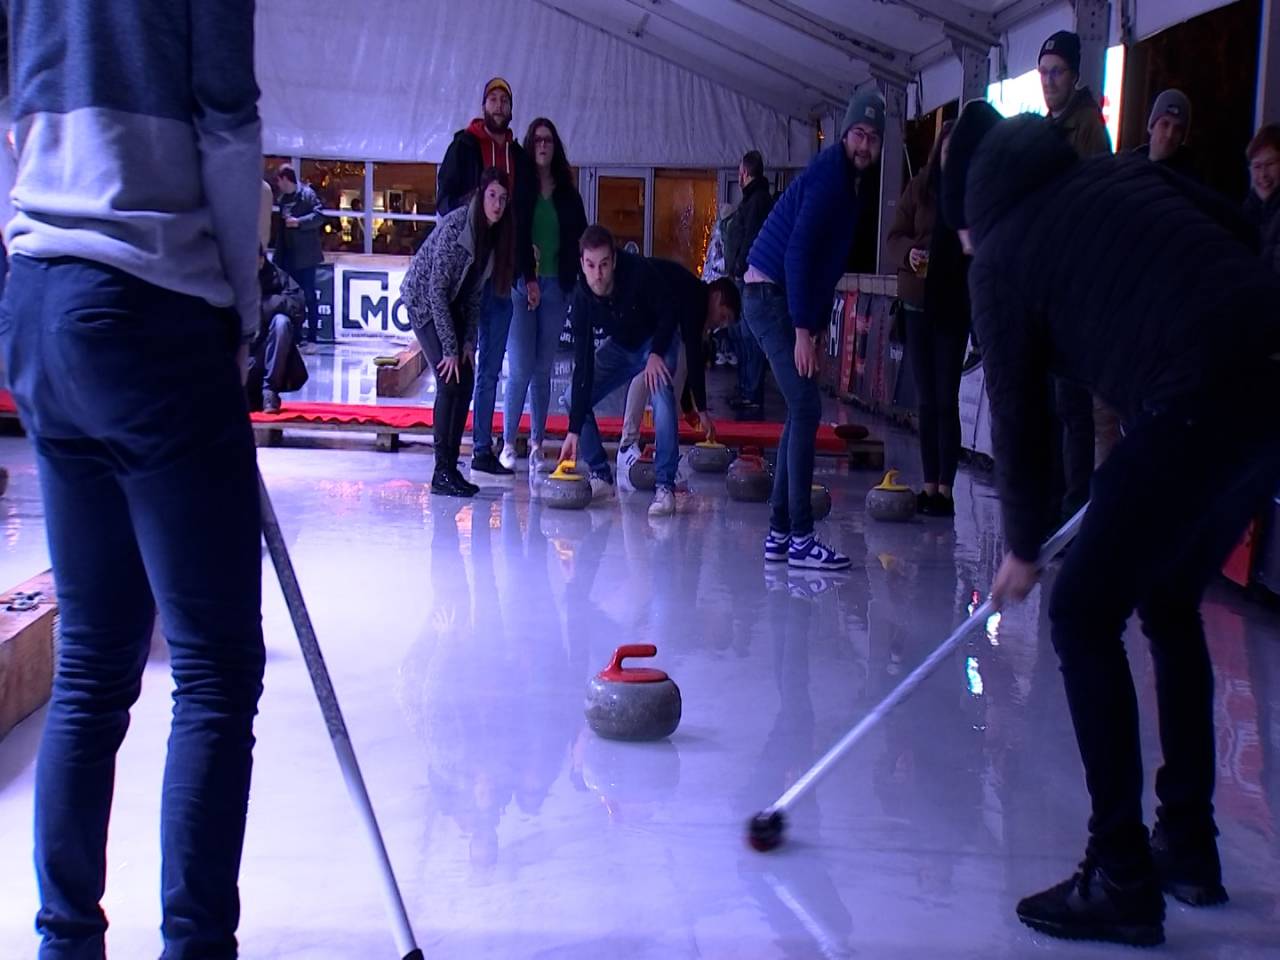 La Roche : Un tournoi de curling comme aux J.O. d'hiver